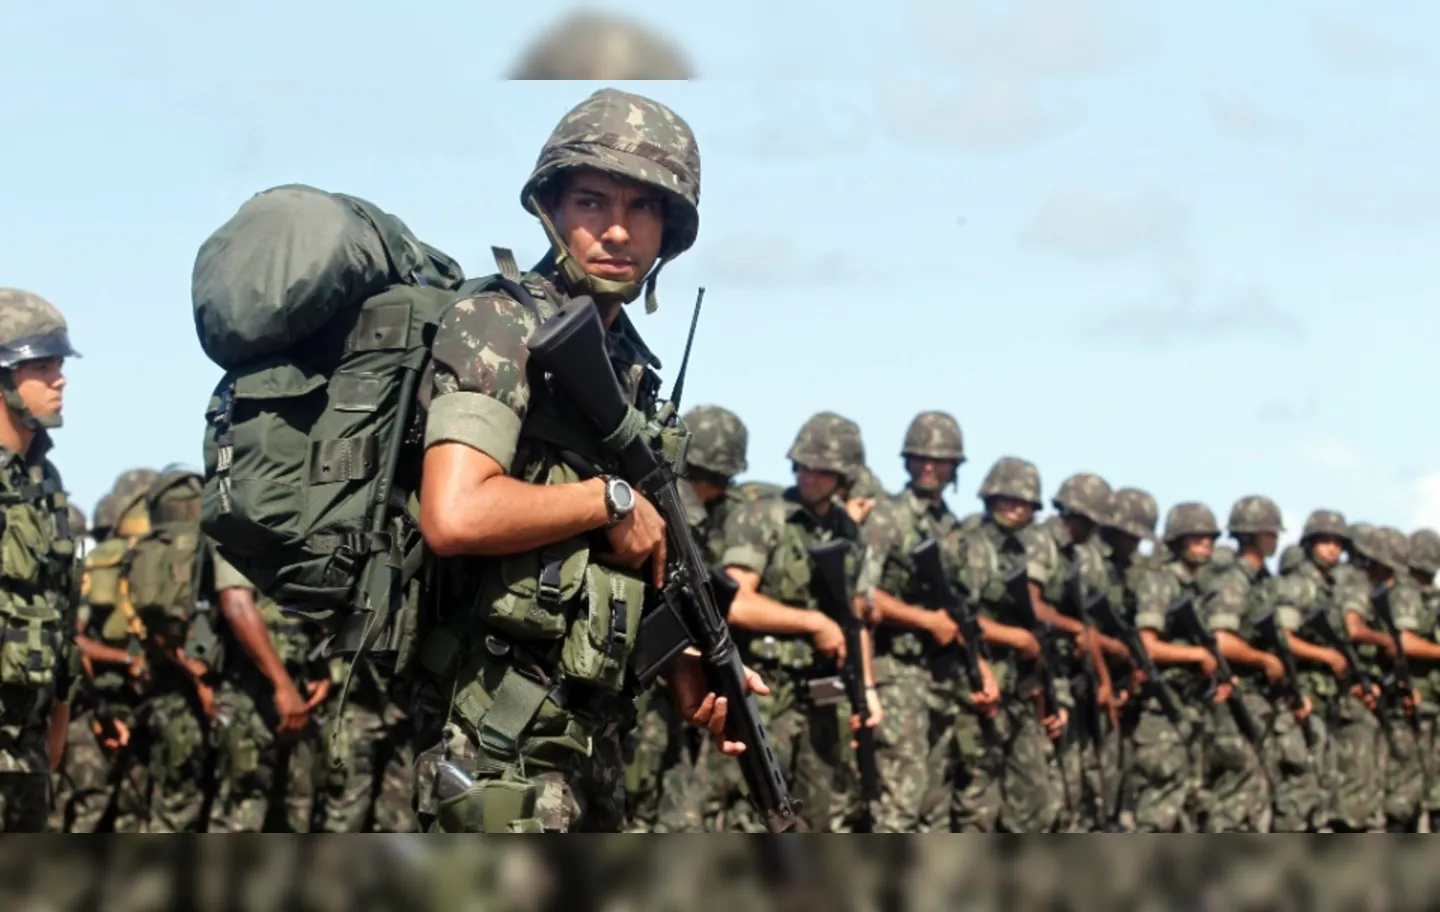 Pela proposta, será facultada aos brasileiros a apresentação para o serviço militar dos 18 aos 45 anos de idade, quando serão alistados nas Forças Armadas